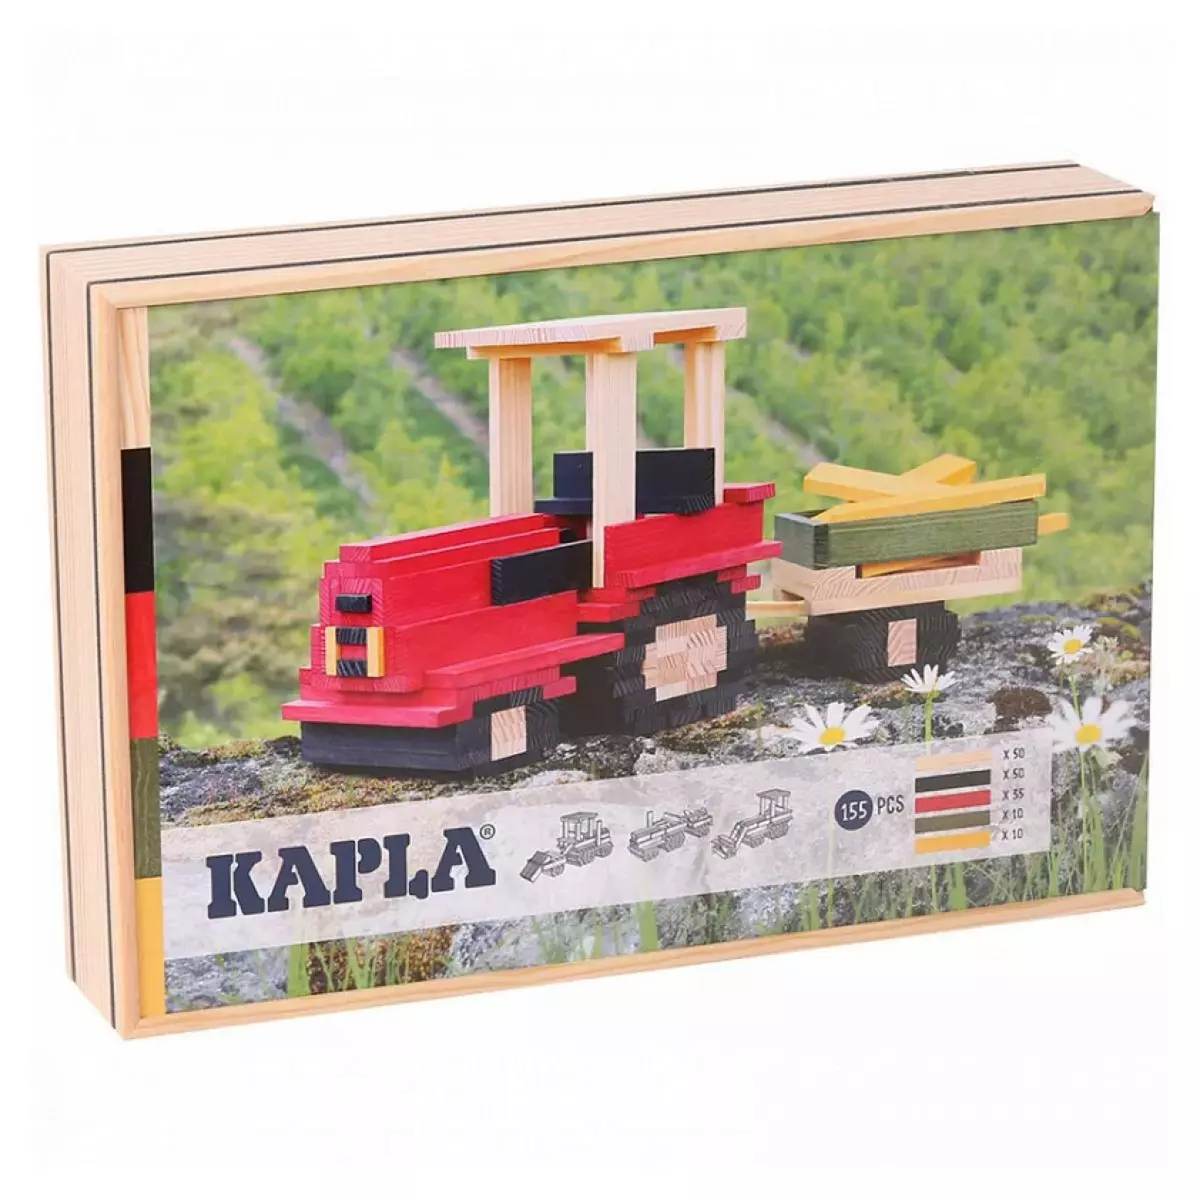 Kapla Coffret tracteur  155 planchettes coloris naturel et colores